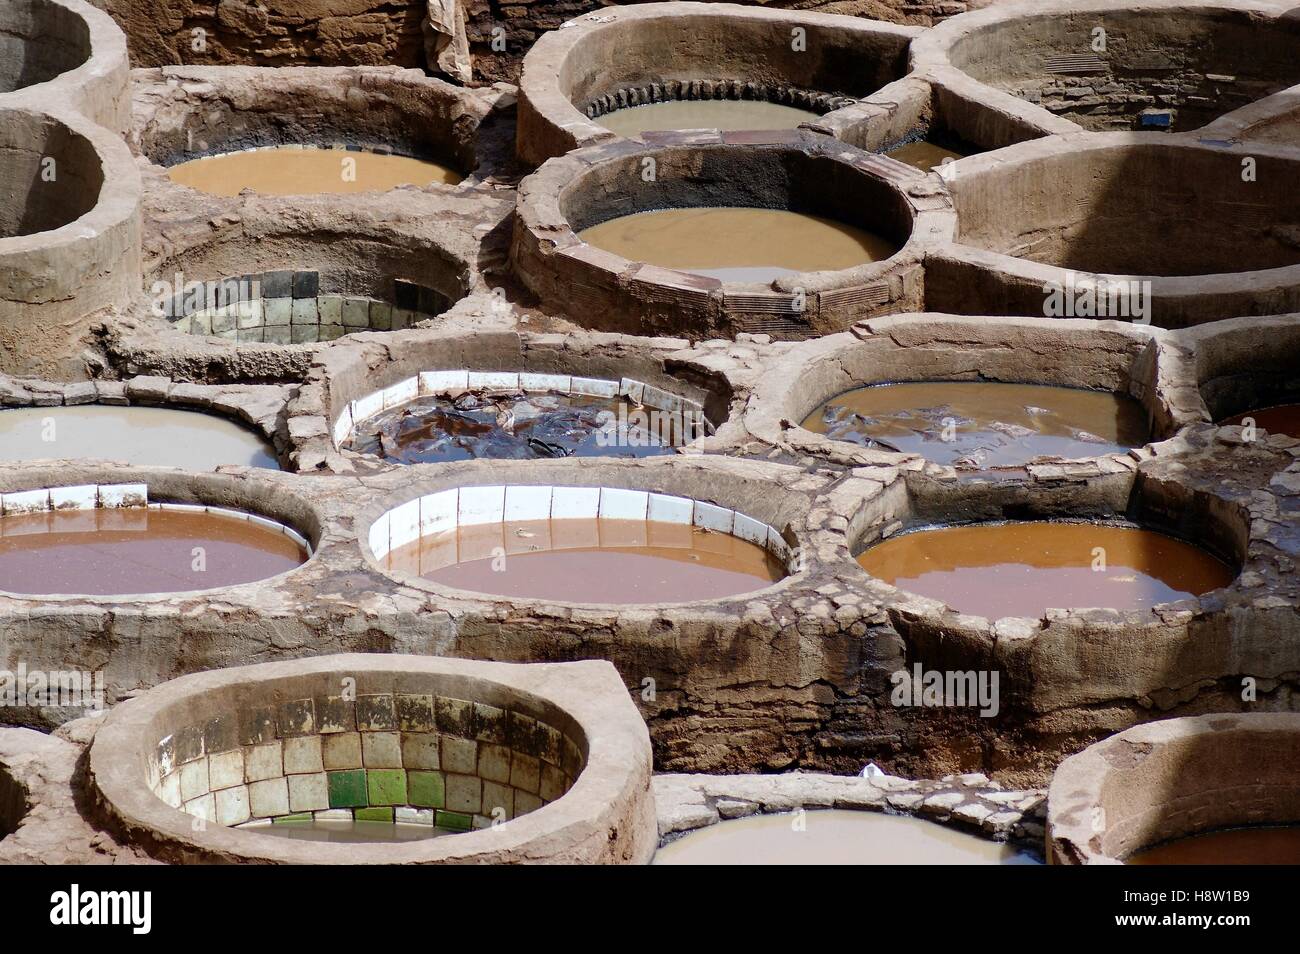 La tannerie en cuir historique Chouara, également connue sous le nom de Chouwara, à Fès, au Maroc, utilise des cuves extérieures carrelées de pierre ronde pour teindre les textiles. Banque D'Images